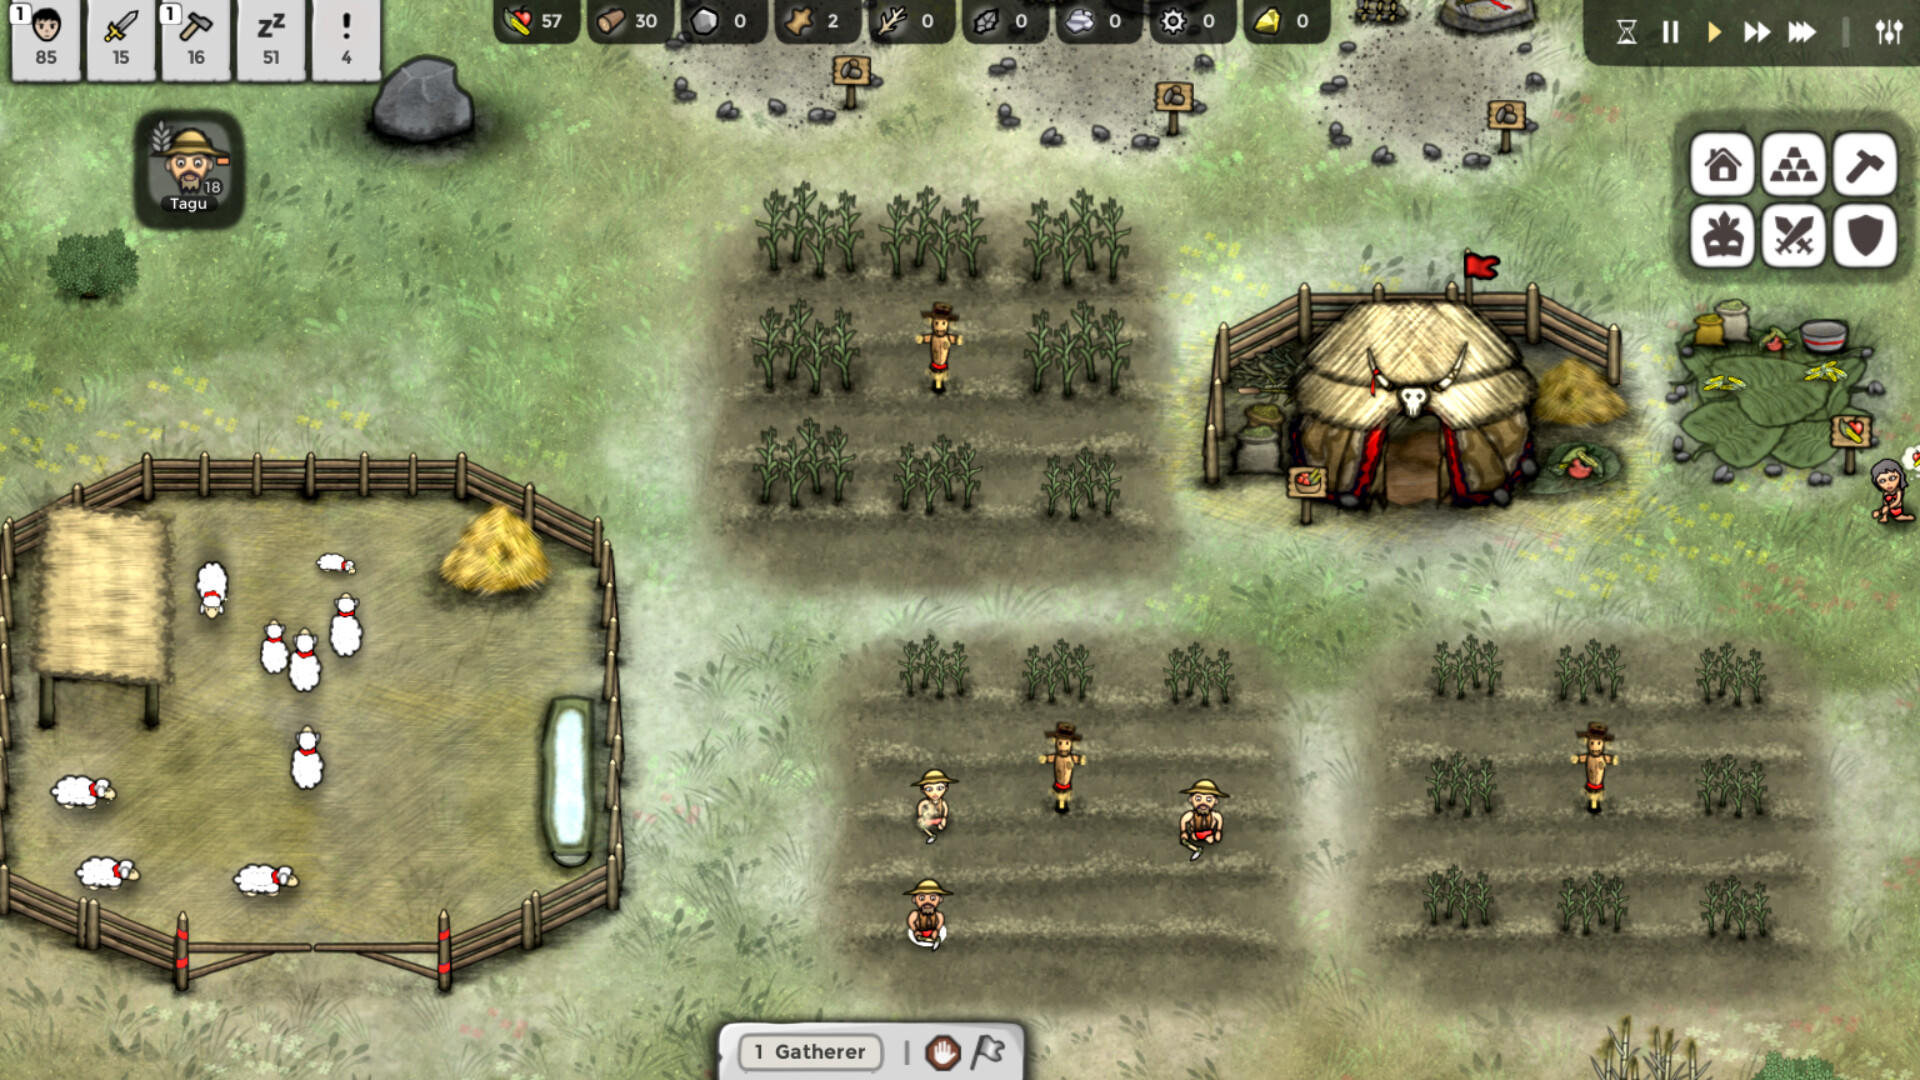 The Omins screenshot game